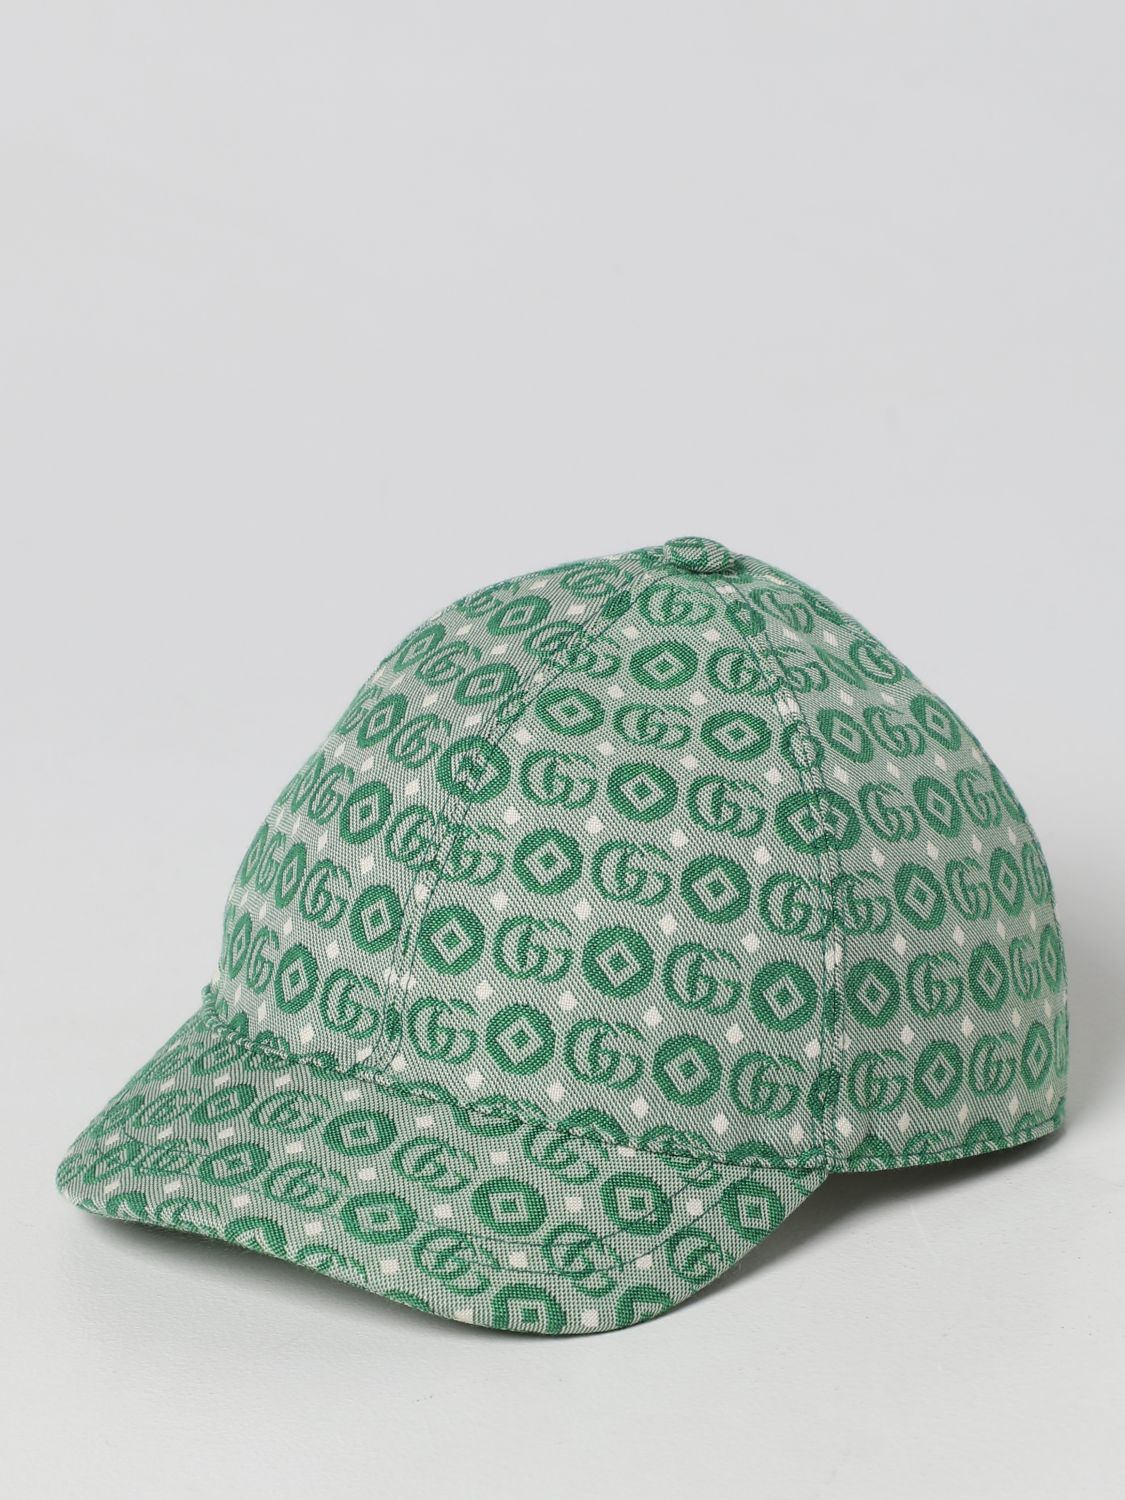 GUCCI：Gucci帽子儿童- 薄荷绿| Gucci帽子4817743HAQA在线就在GIGLIO.COM